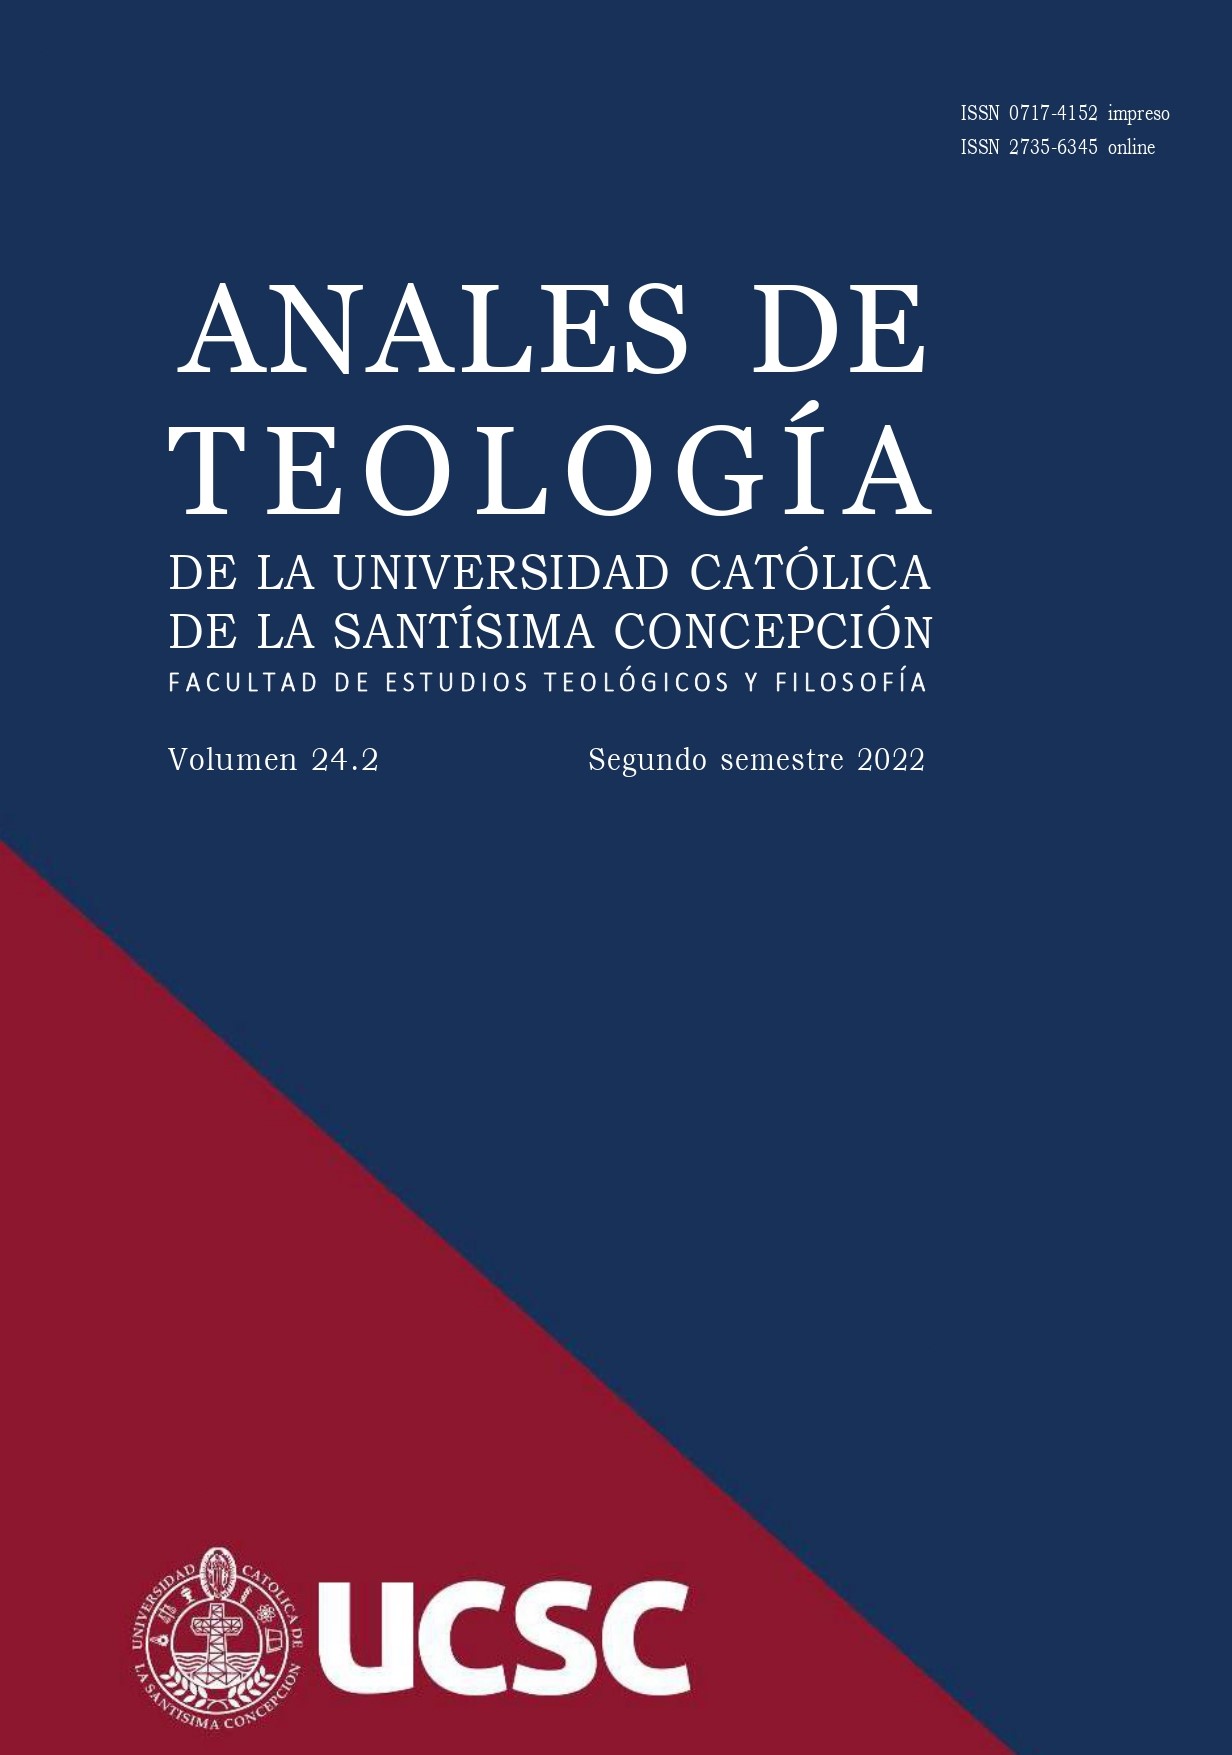 					View Vol. 18 No. 1 (2016): Anales de Teología | Enero - Junio 2016
				